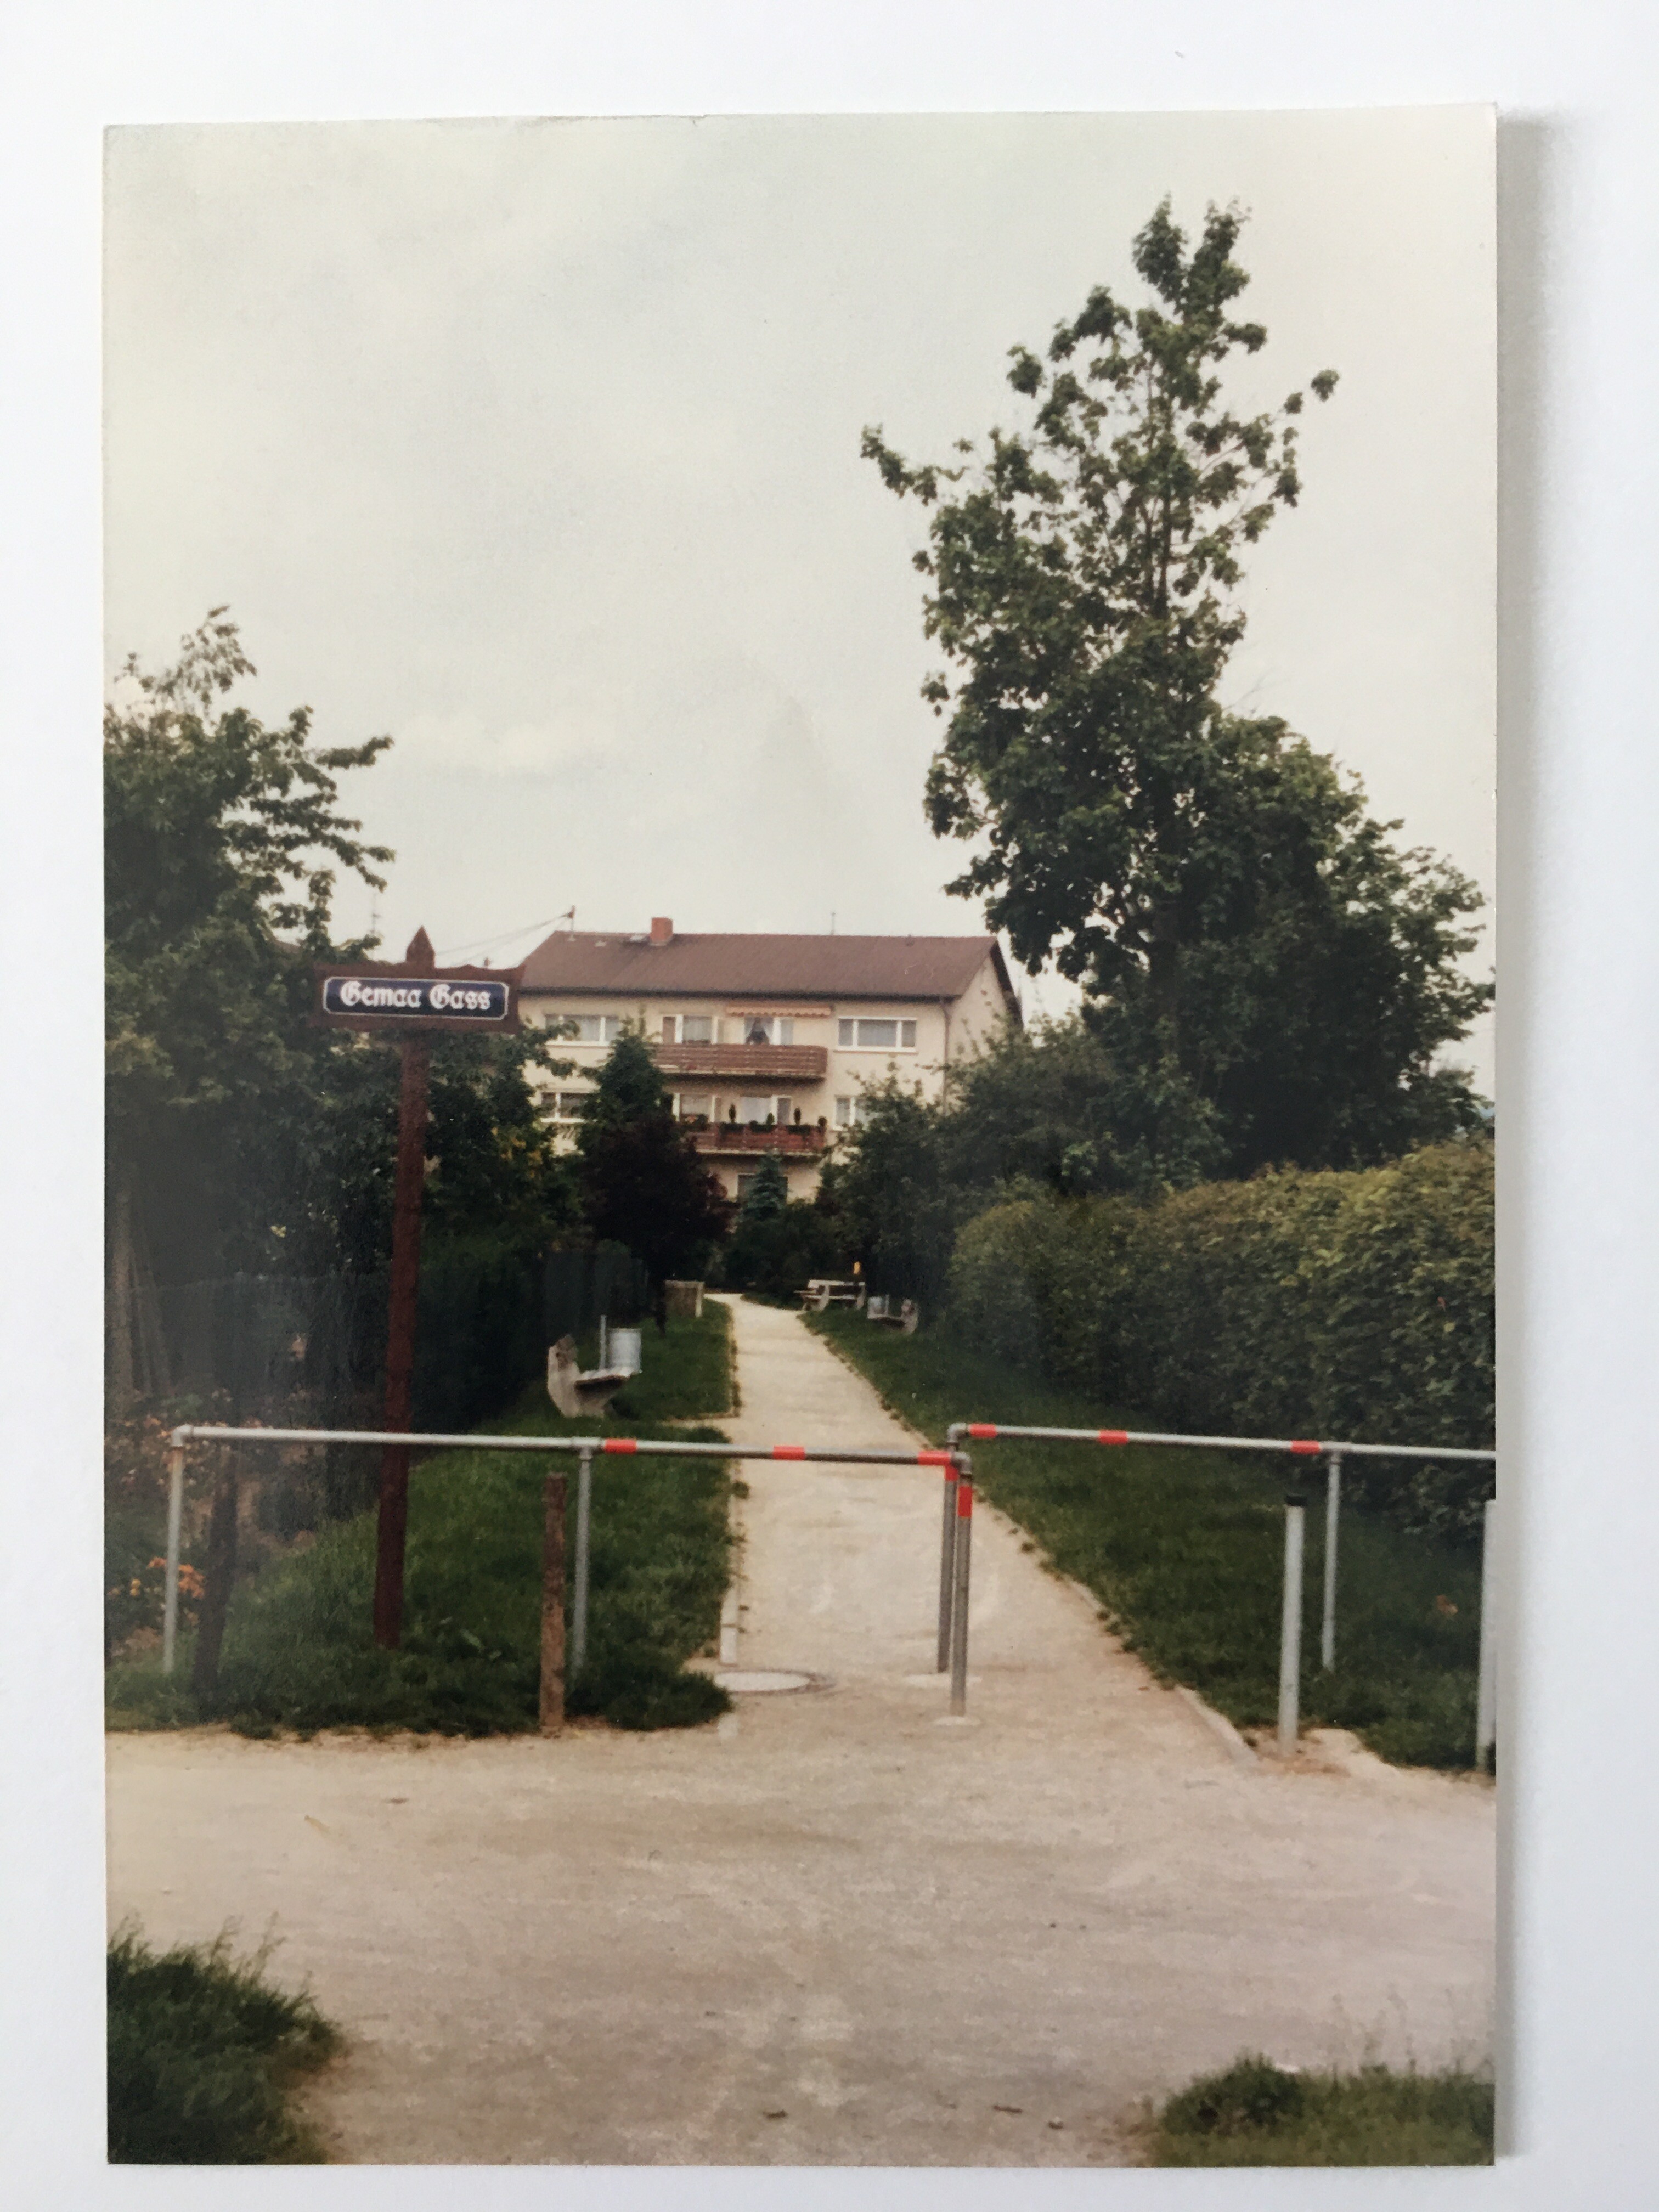 Die neue "Gemaa Gass", ca. 1984 (Taunus-Rhein-Main - Regionalgeschichtliche Sammlung Dr. Stefan Naas CC BY-NC-SA)